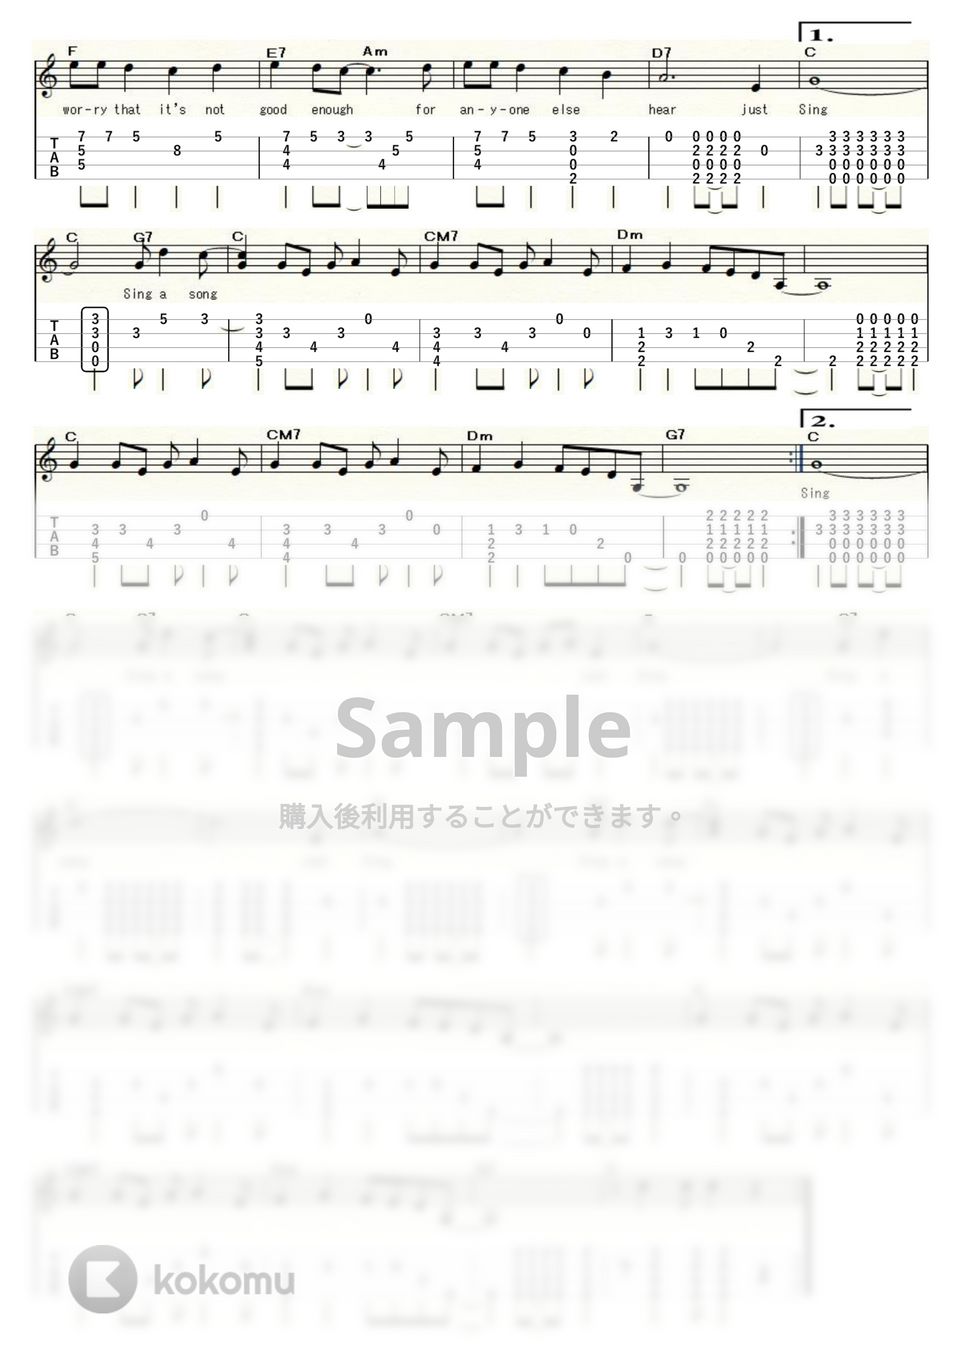 カーペンターズ - SING (ｳｸﾚﾚｿﾛ/Low-G/中級) by ukulelepapa